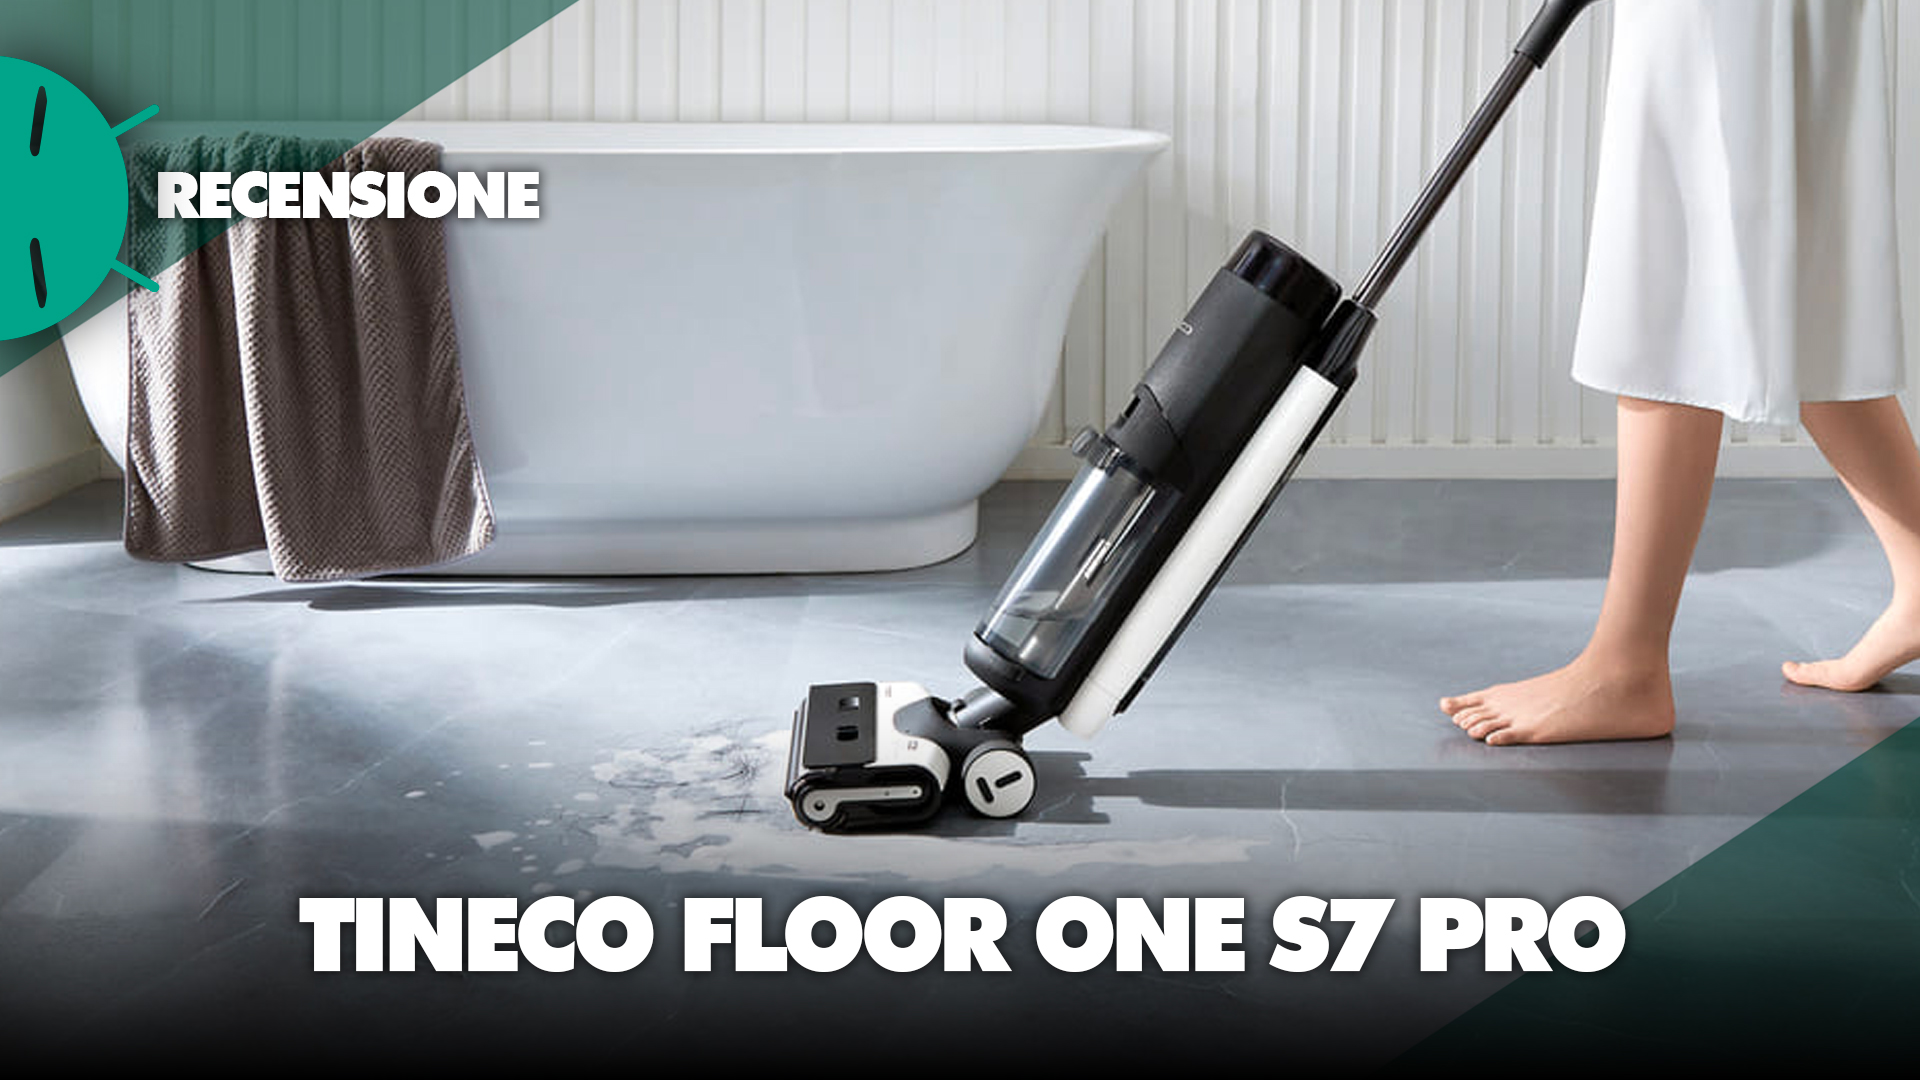 Test du Tineco Floor One S7 Pro : l'aspirateur laveur haut de